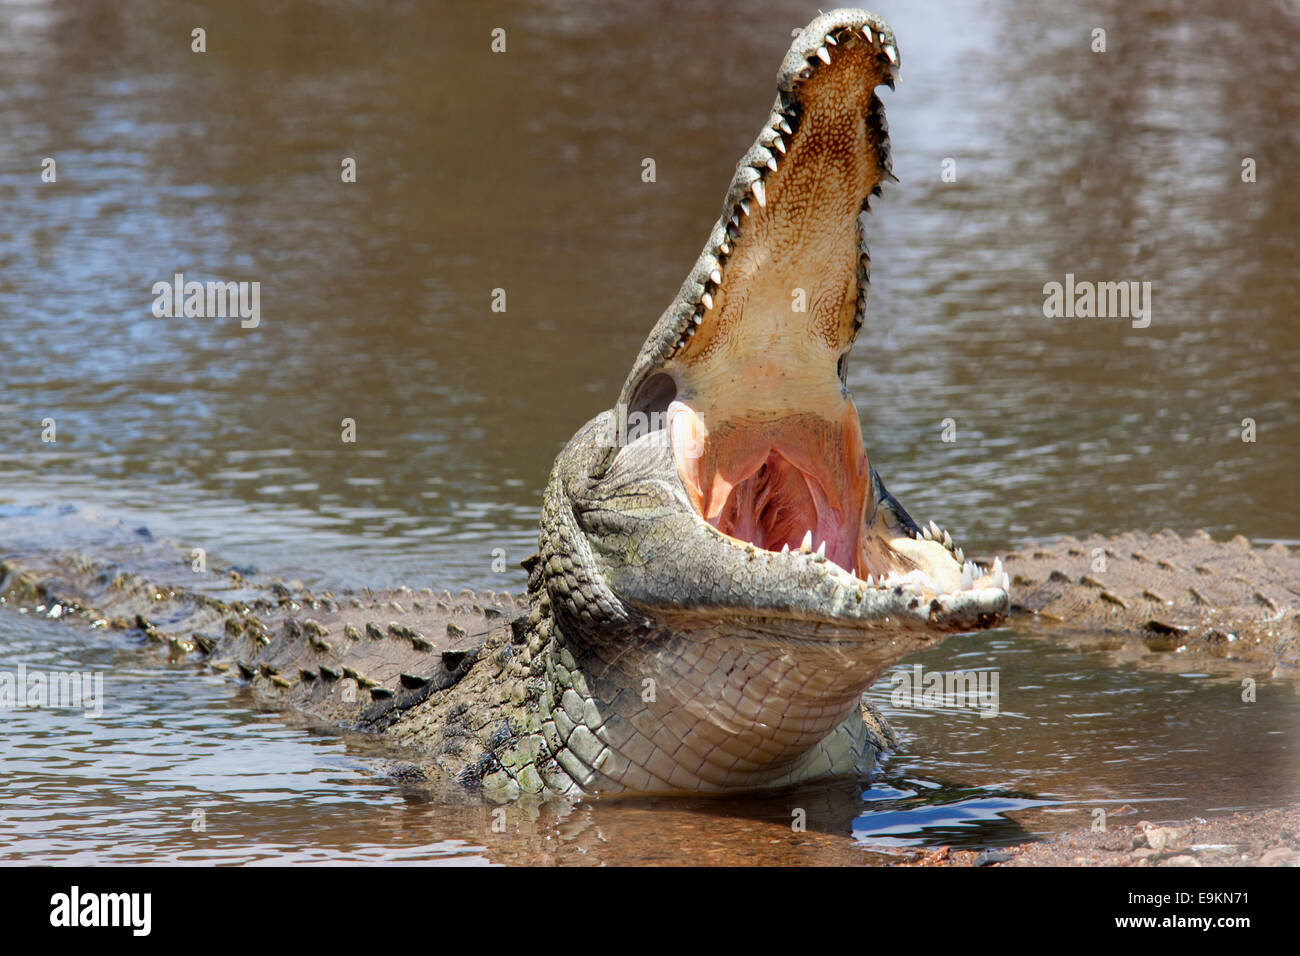 Crocodile du Nil, Crocodylus niloticus, mâchoires agape, Kruger National Park, Afrique du Sud Banque D'Images